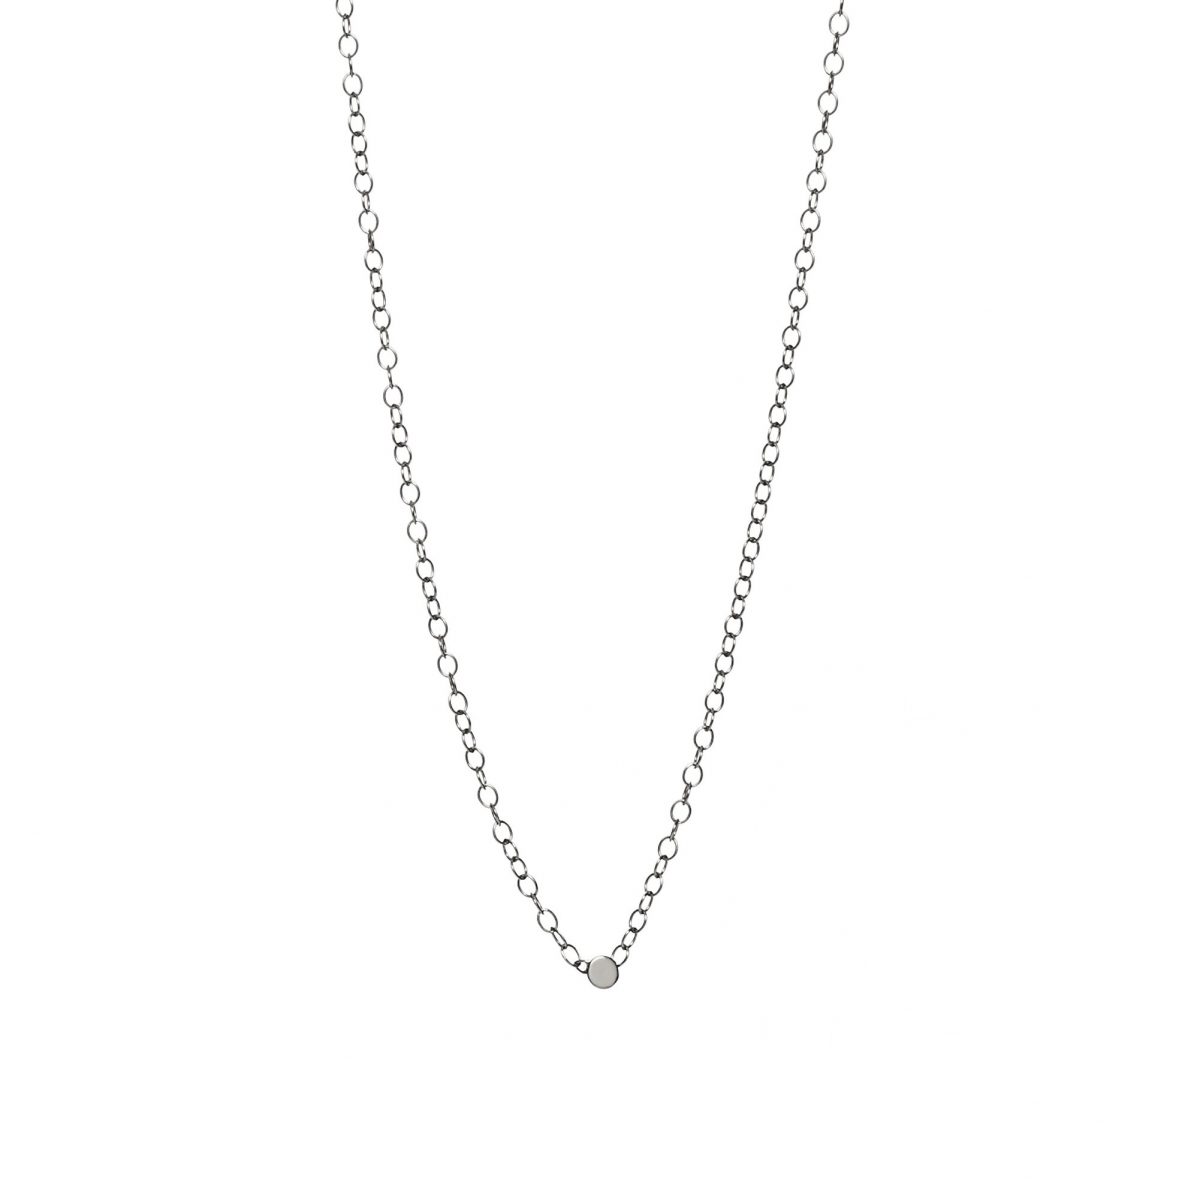 samojauskaite_jewellery_dot_necklace_silver_closeup